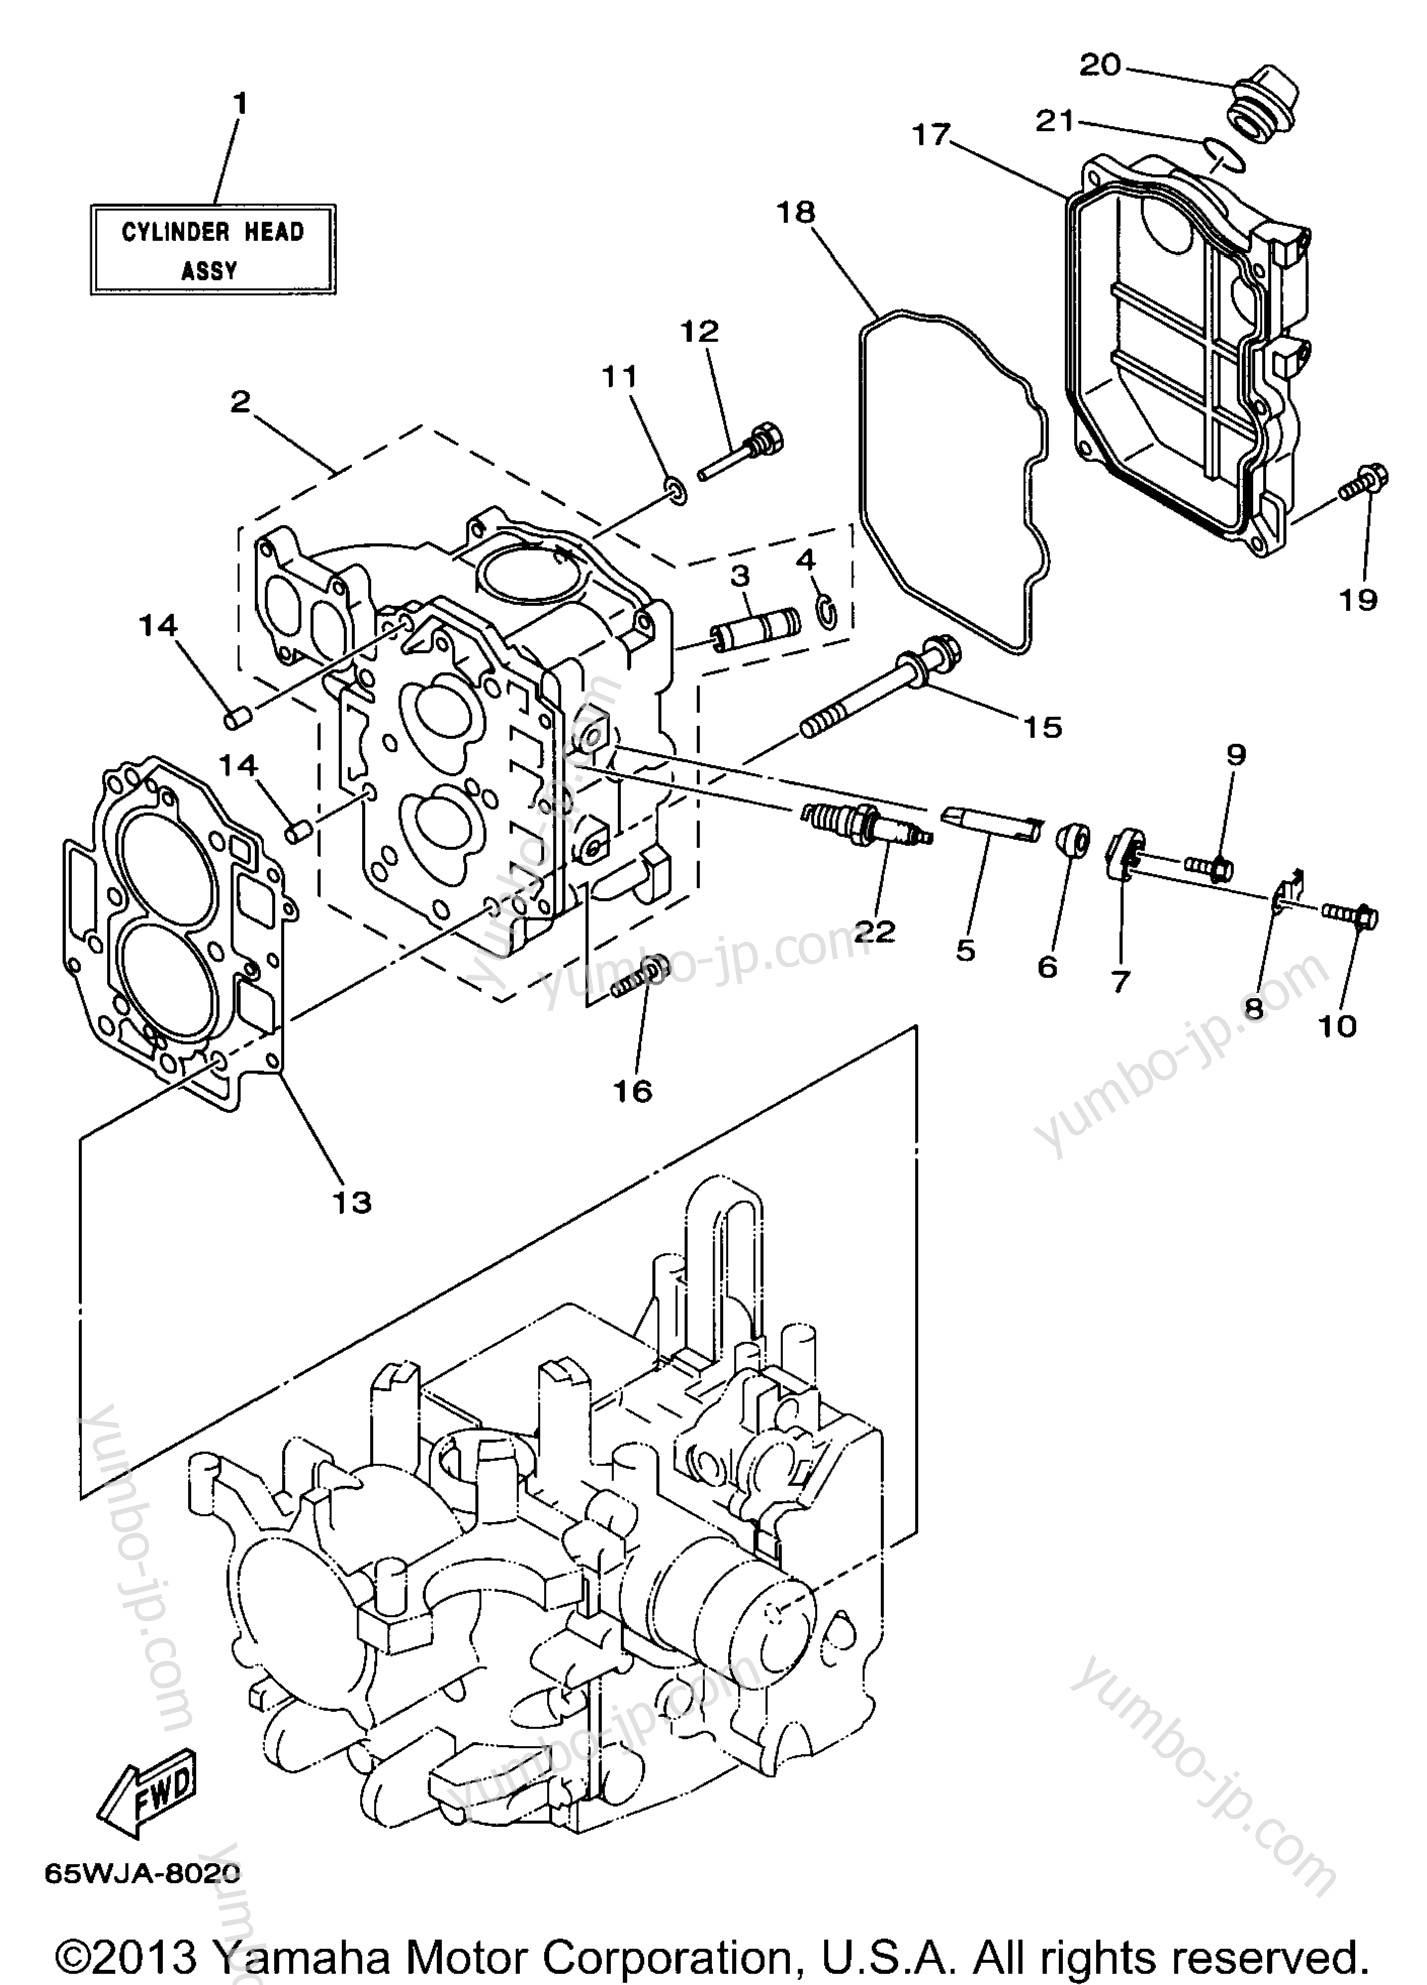 Cylinder Crankcase 2 для лодочных моторов YAMAHA F25ELRW 1998 г.